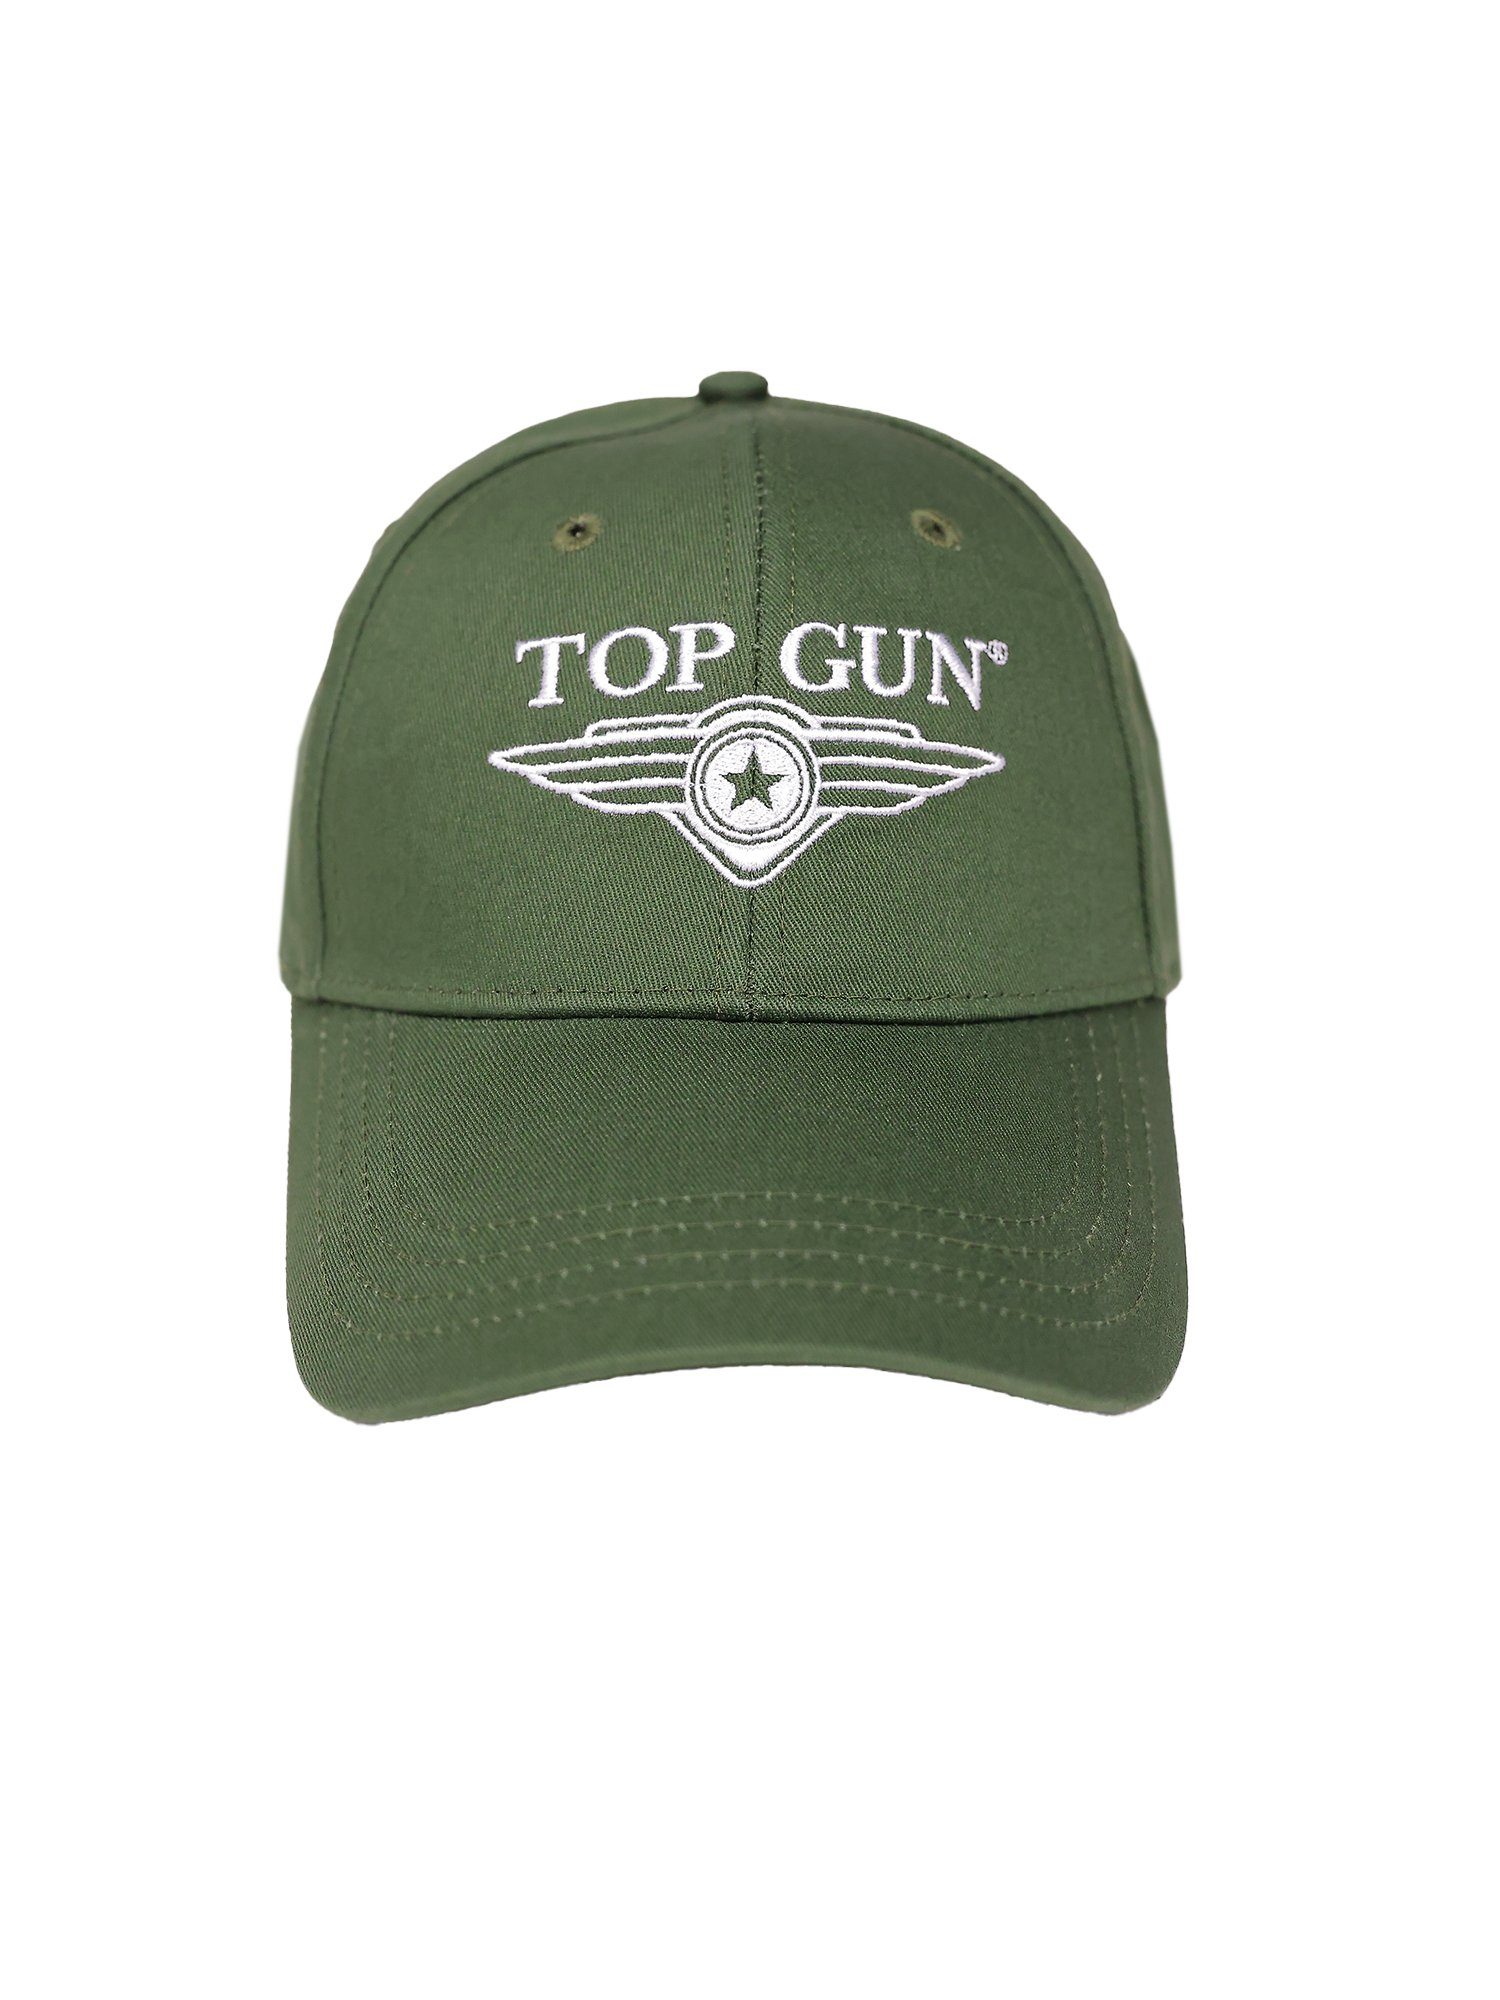 TOP GUN Snapback TG22013 Cap olive